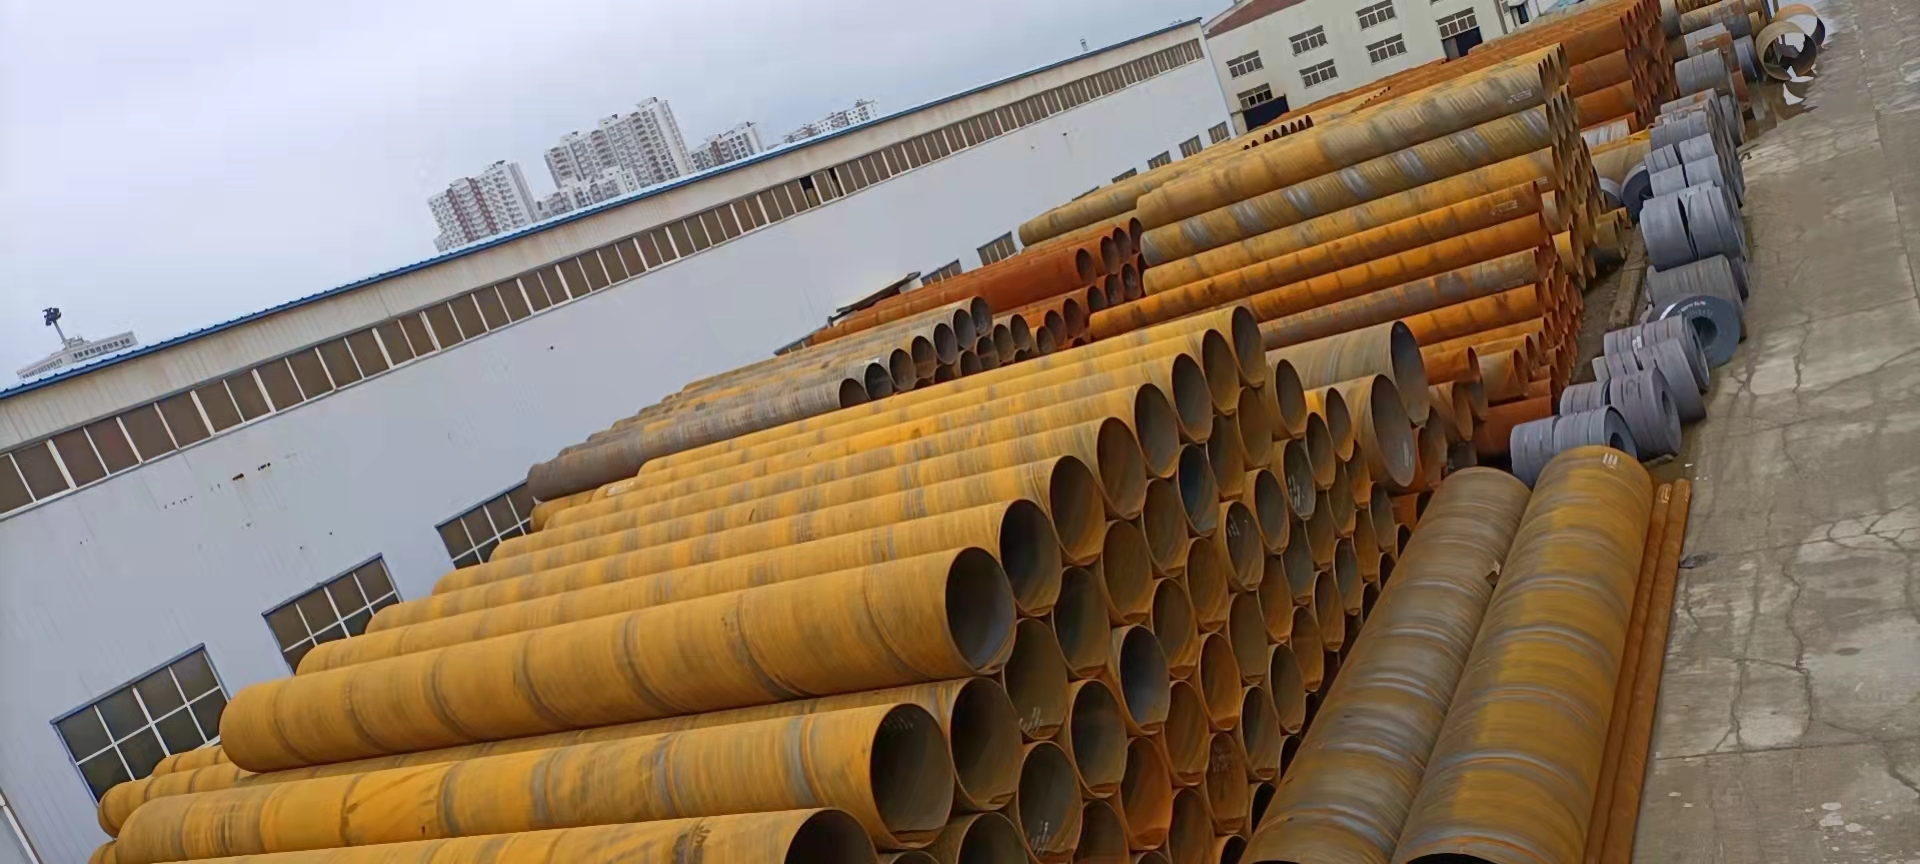 五洲牌螺旋钢管 年产46万吨 螺旋钢管厂 防腐螺旋钢管 可生产219-3360mm的钢管 API螺旋钢管8